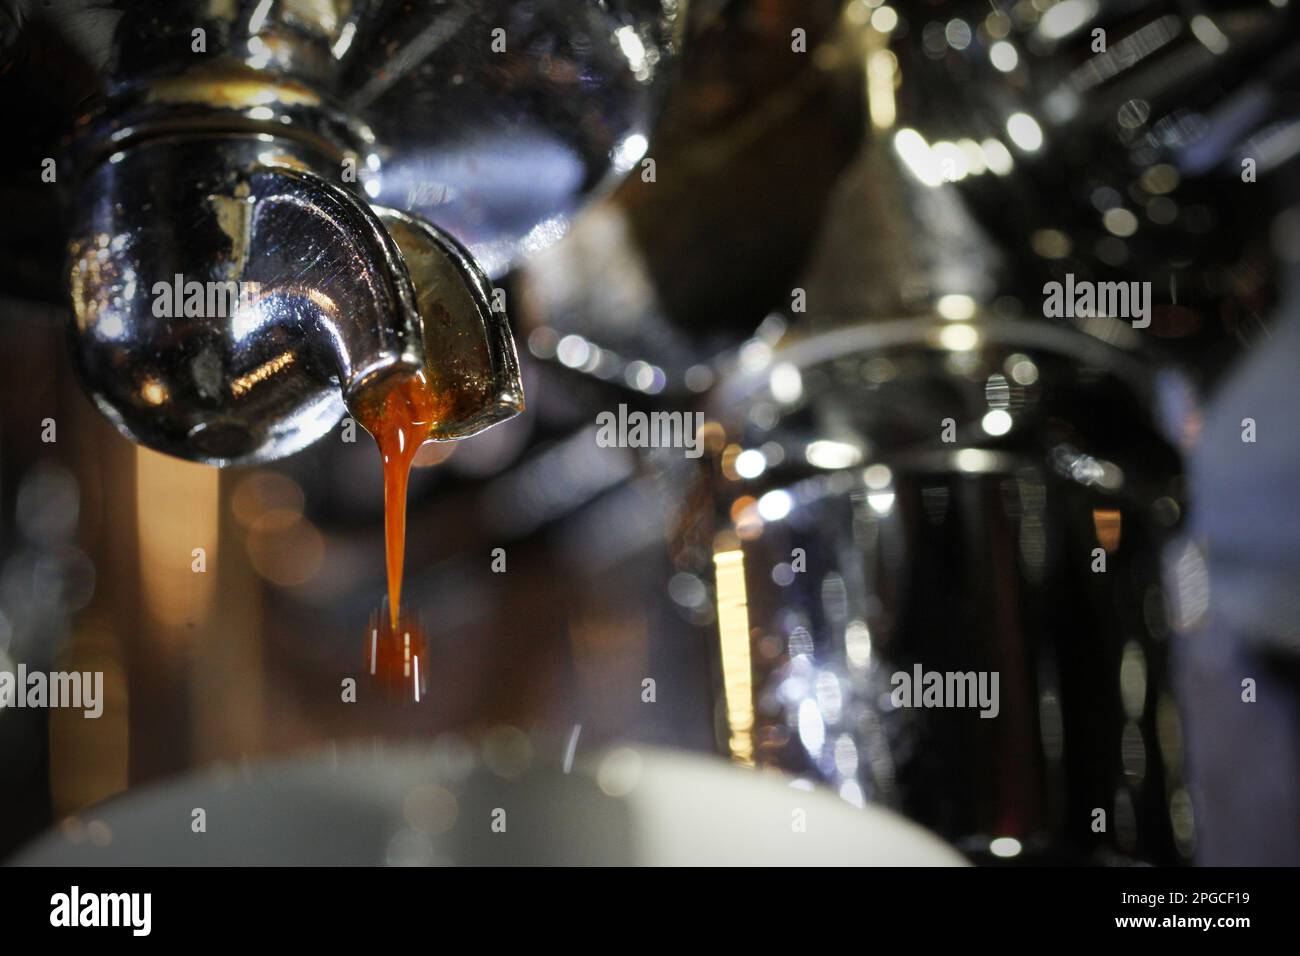 Gros plan extrême du début de l'espresso parfait verser avec la dose de café brun qui s'égoutte de la poignée du porte-filtre unique en acier inoxydable. Bari Banque D'Images